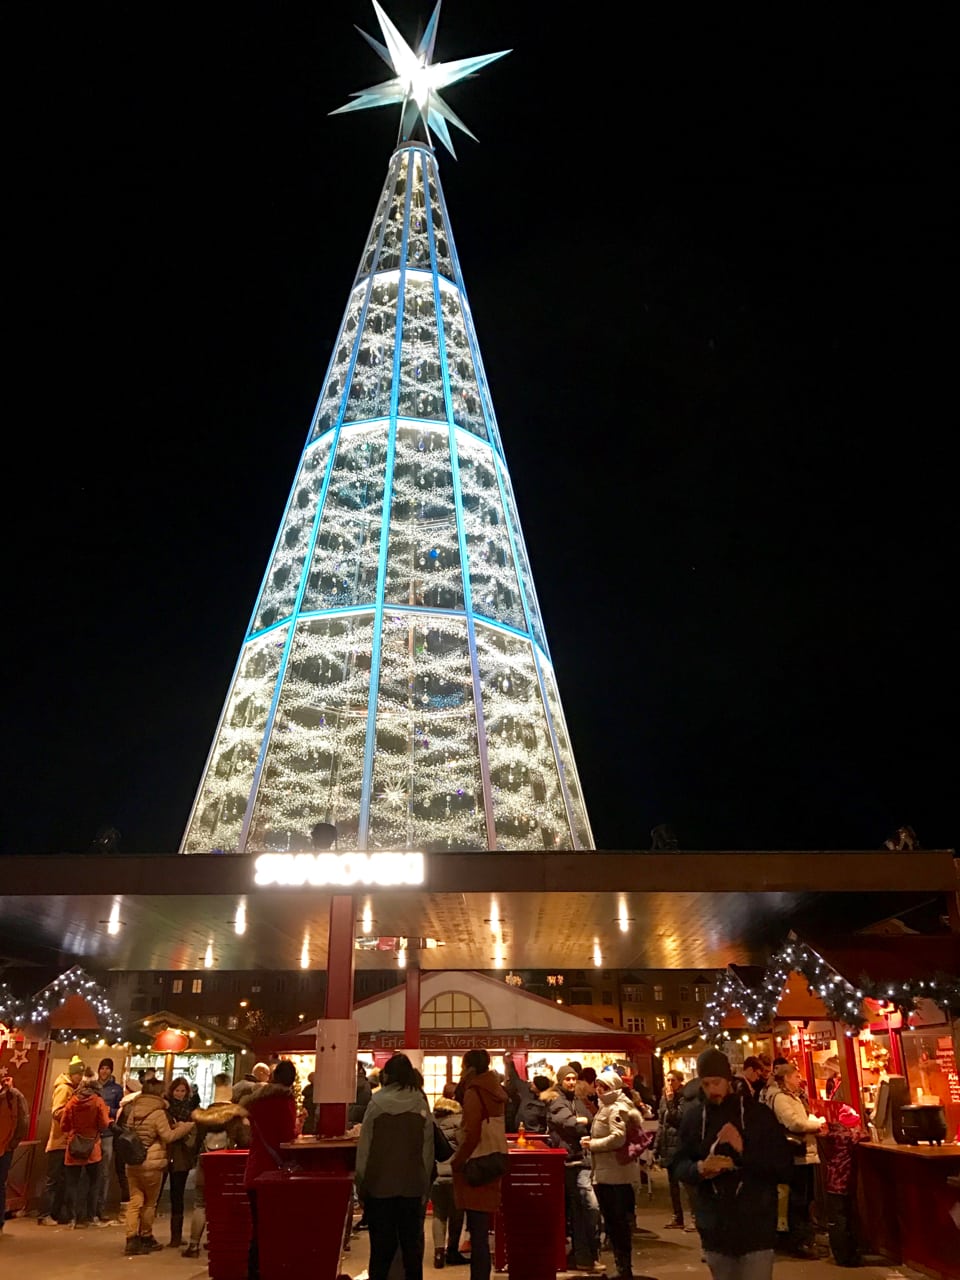 The Innsbruck Christmas Market at Marktplatz.